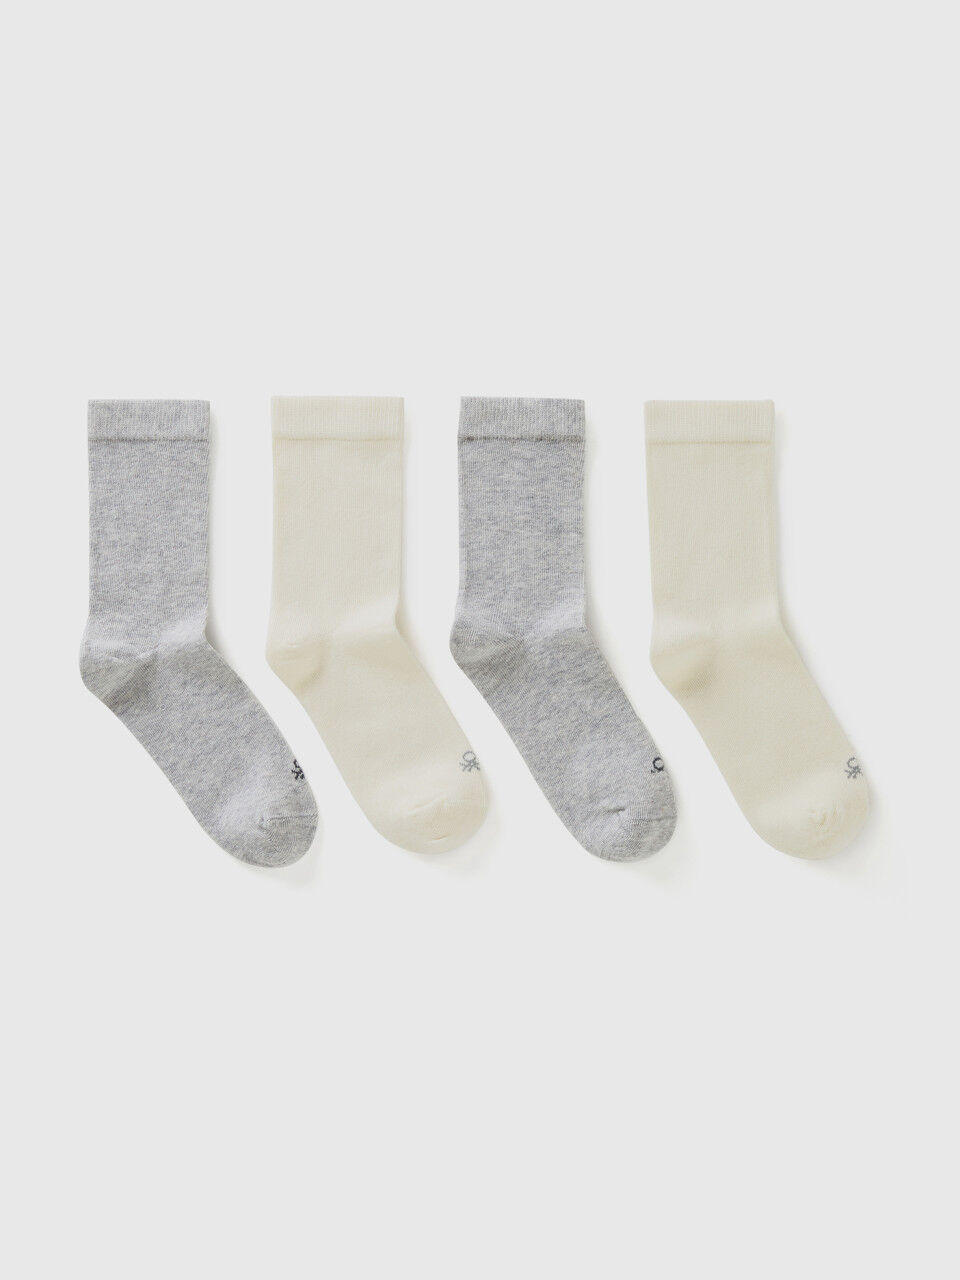 Cuatro pares de calcetines blancos y grises